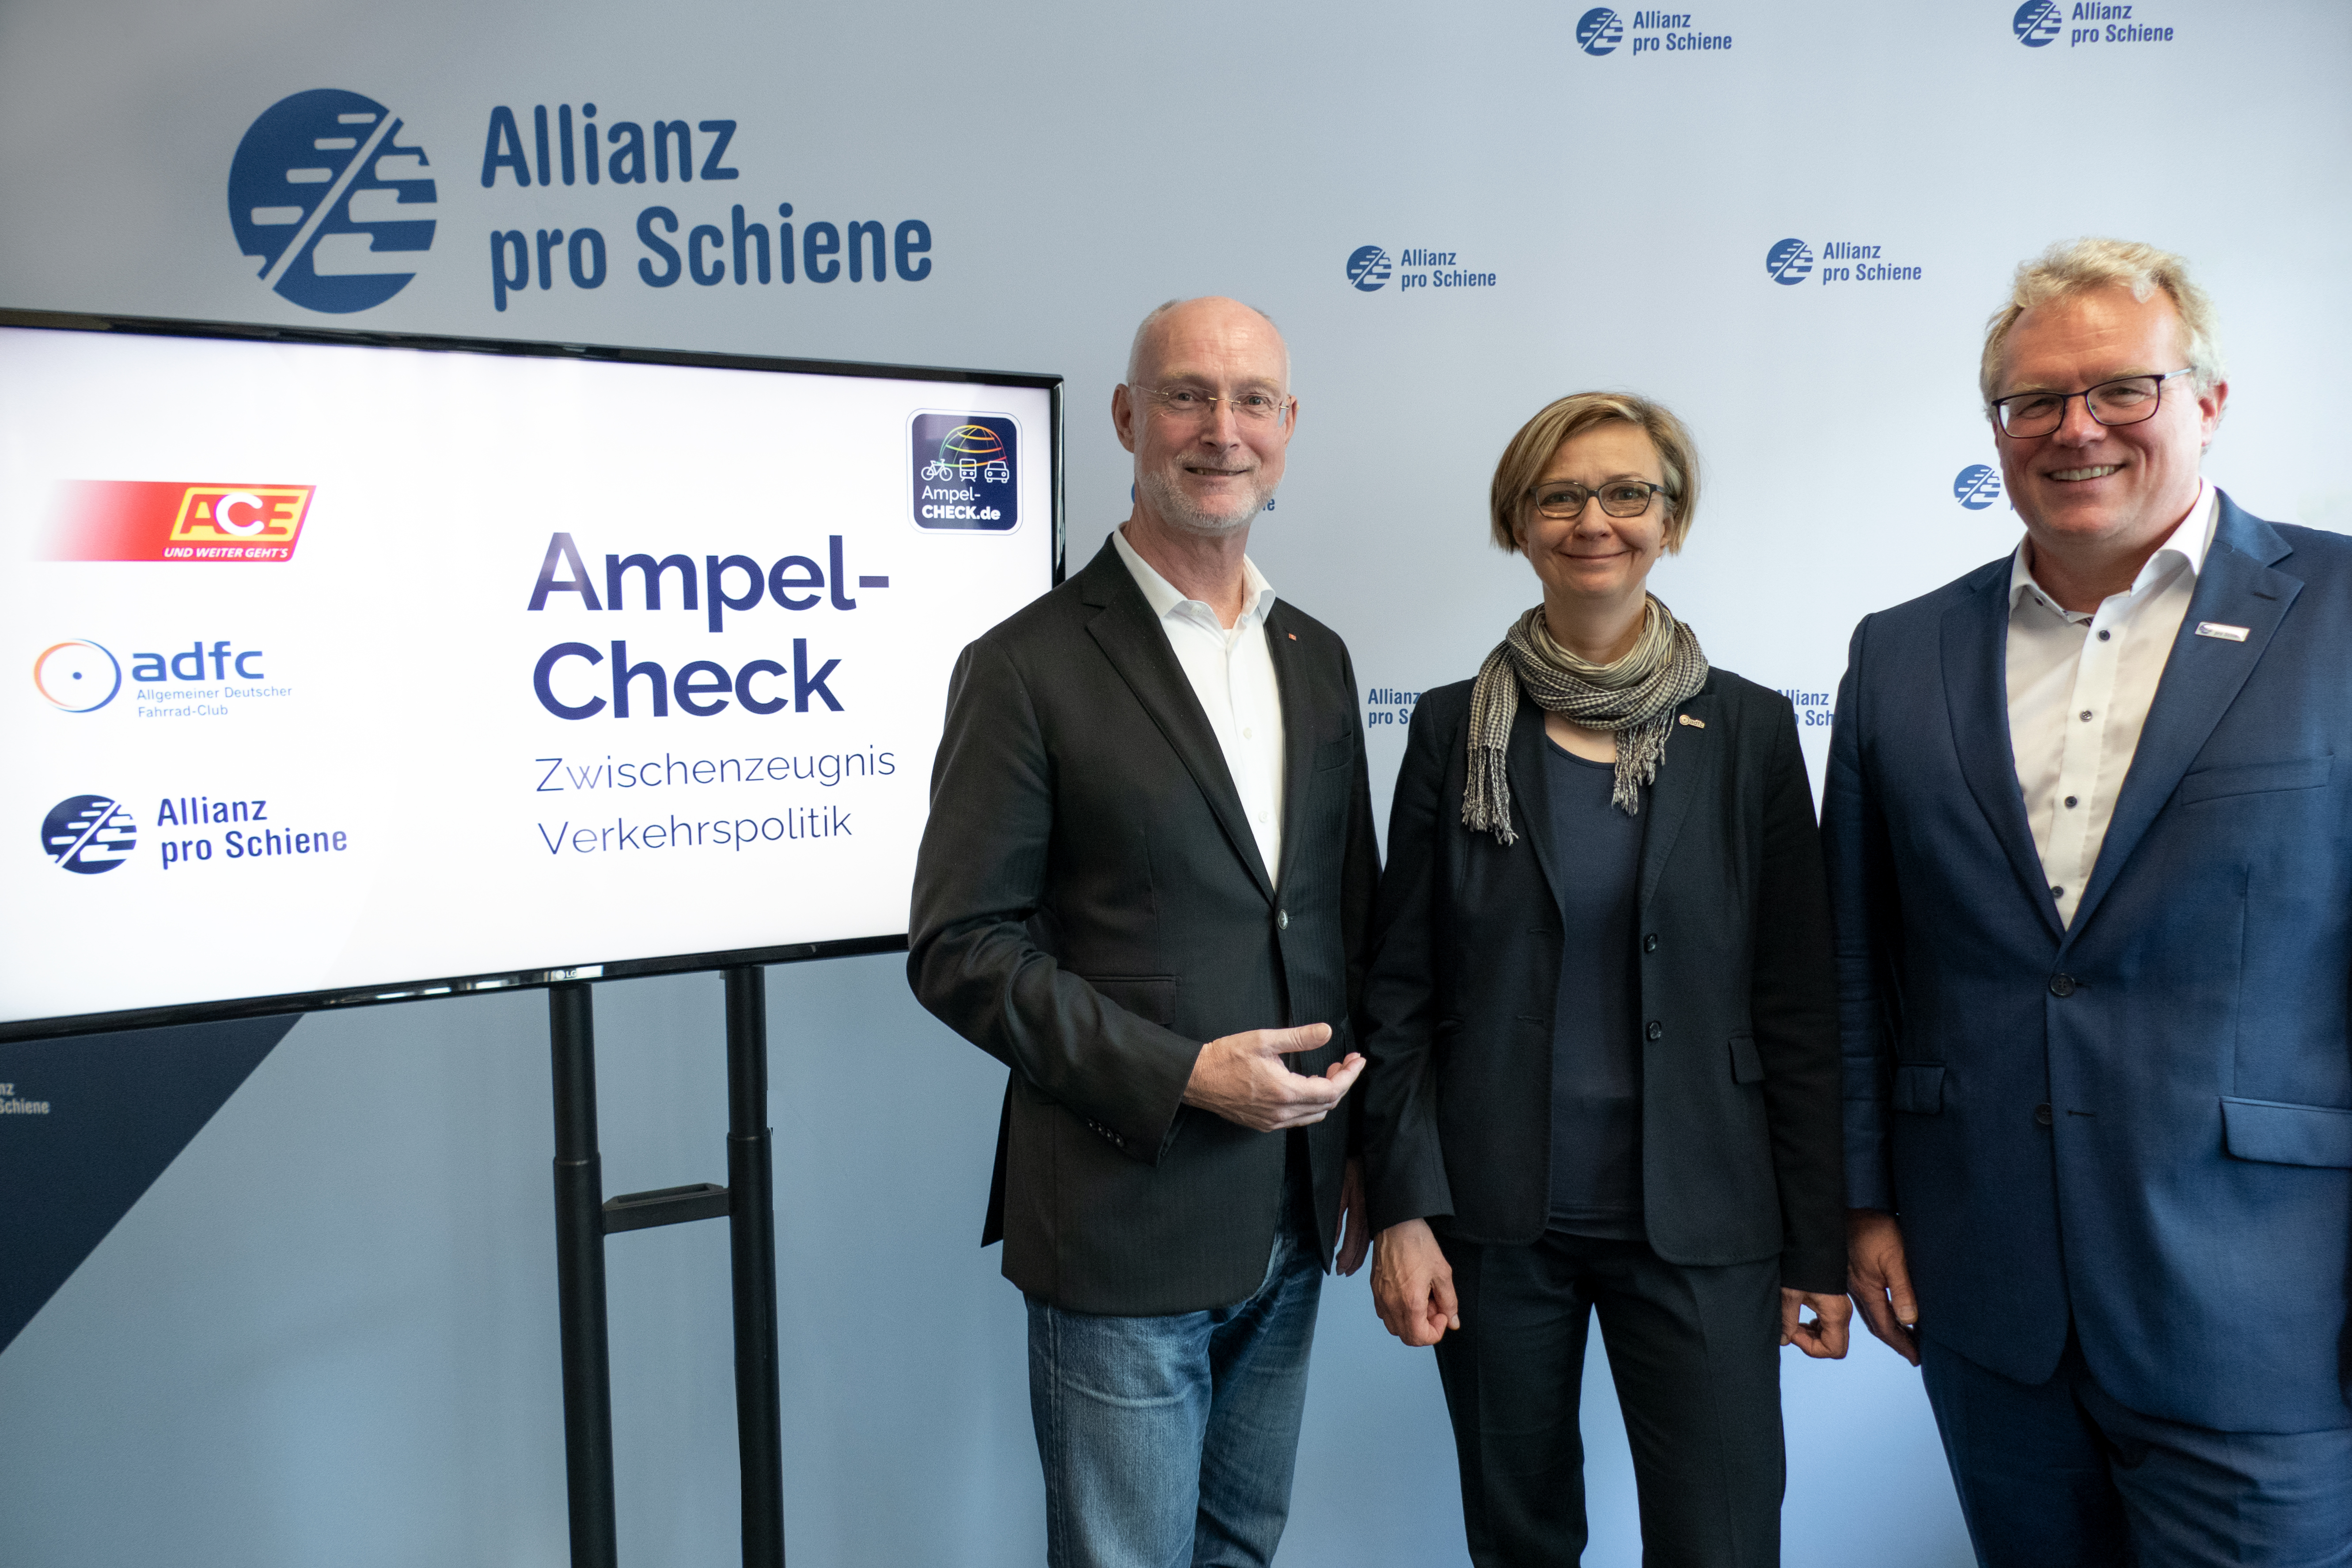 Stefan Heimlich vom ACE, Angela Kohls vom ADFC und Dirk Flege von der Allianz pro Schiene (v.l.) geben der Ampel-Koalition die Gesamtnote 4.